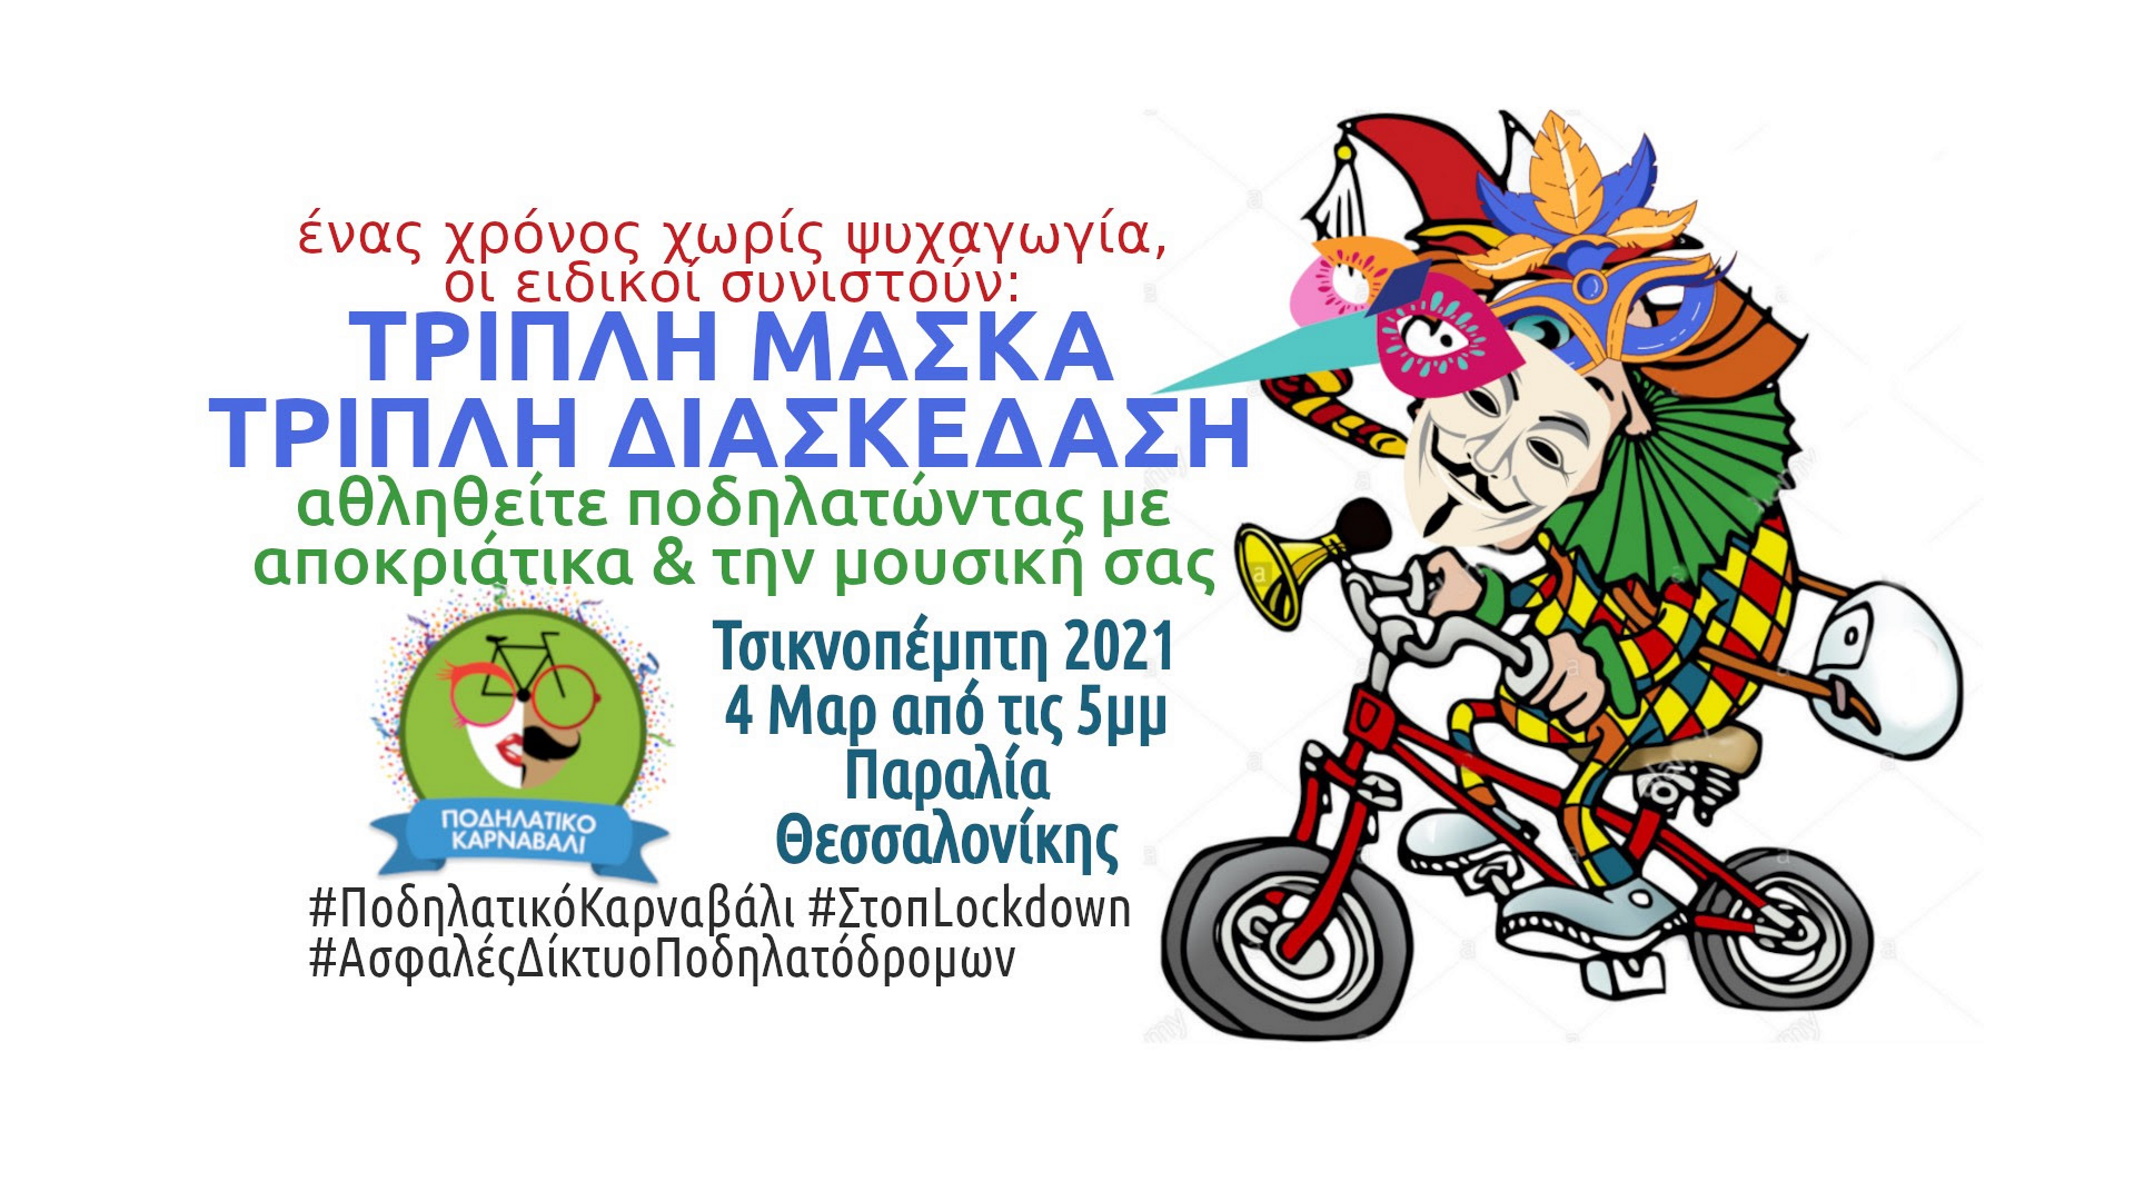 Θεσσαλονίκη – Τσικνοπέμπτη: Οδηγίες προς ποδηλάτες καρναβαλιστές